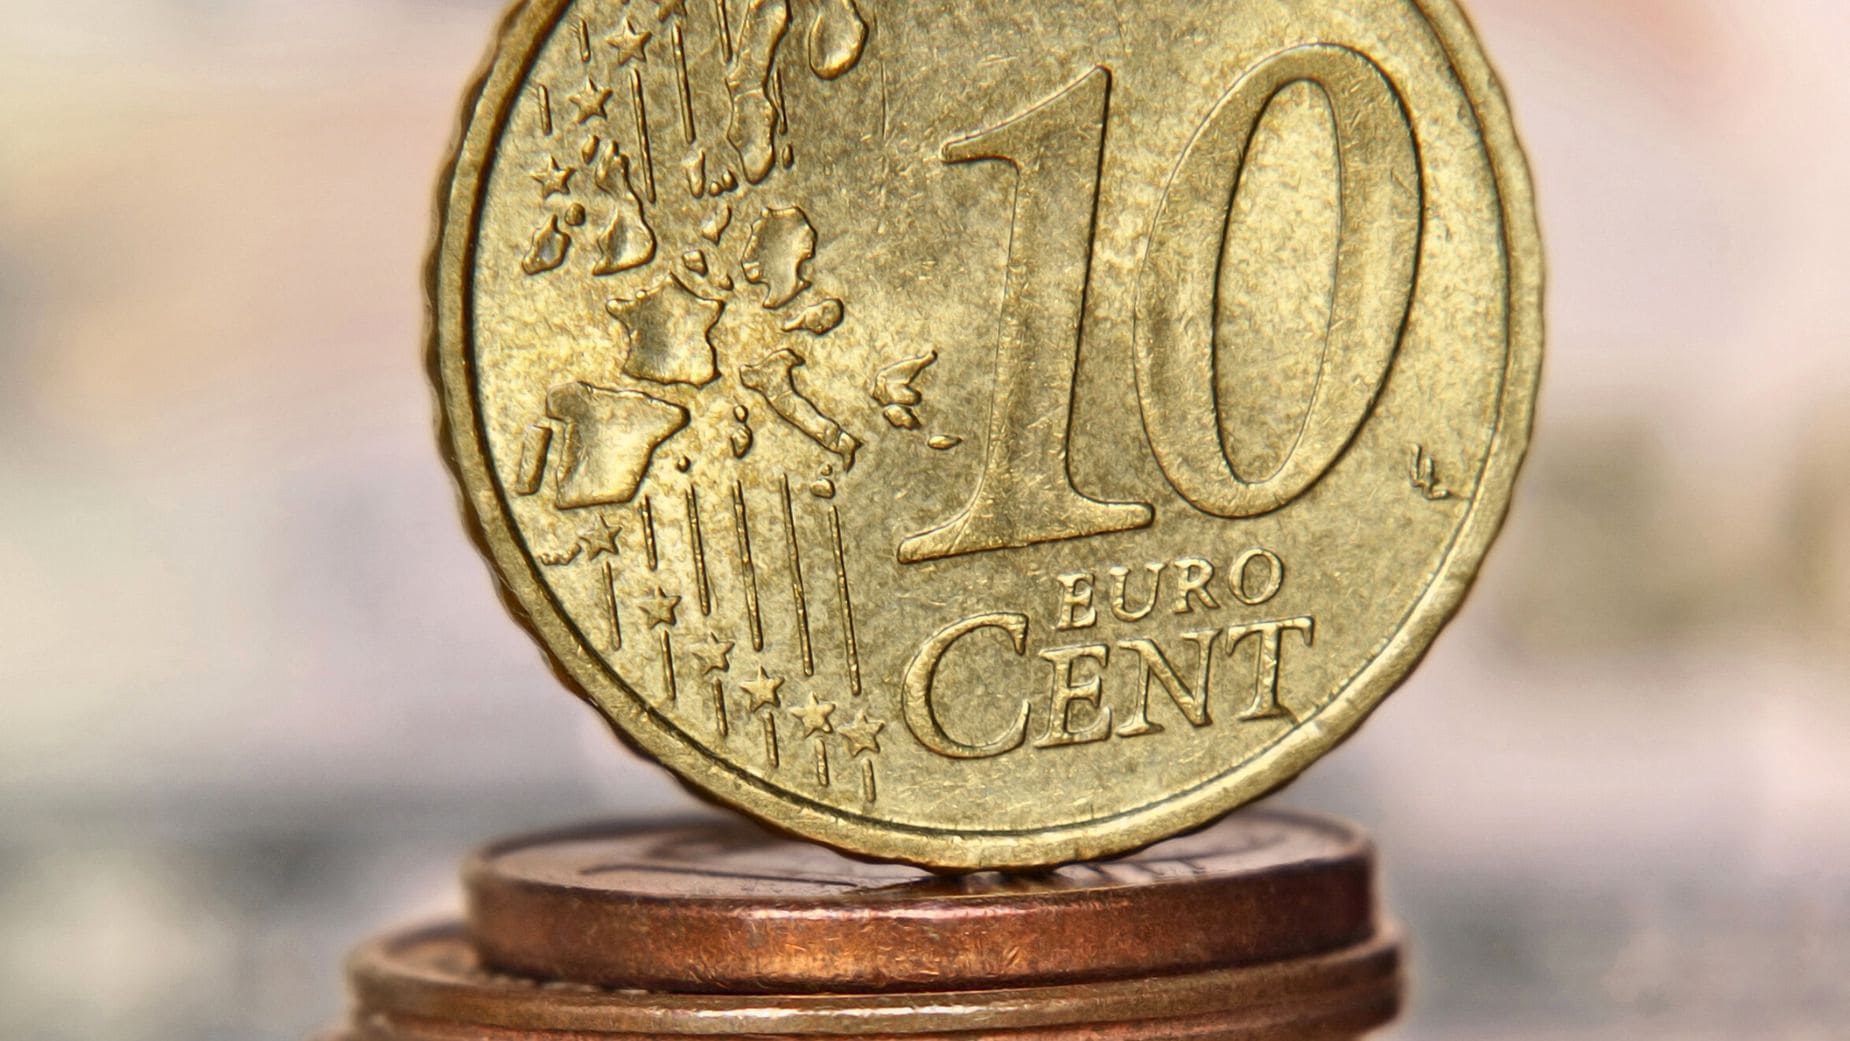 Monedas de 10 céntimos que valen una fortuna